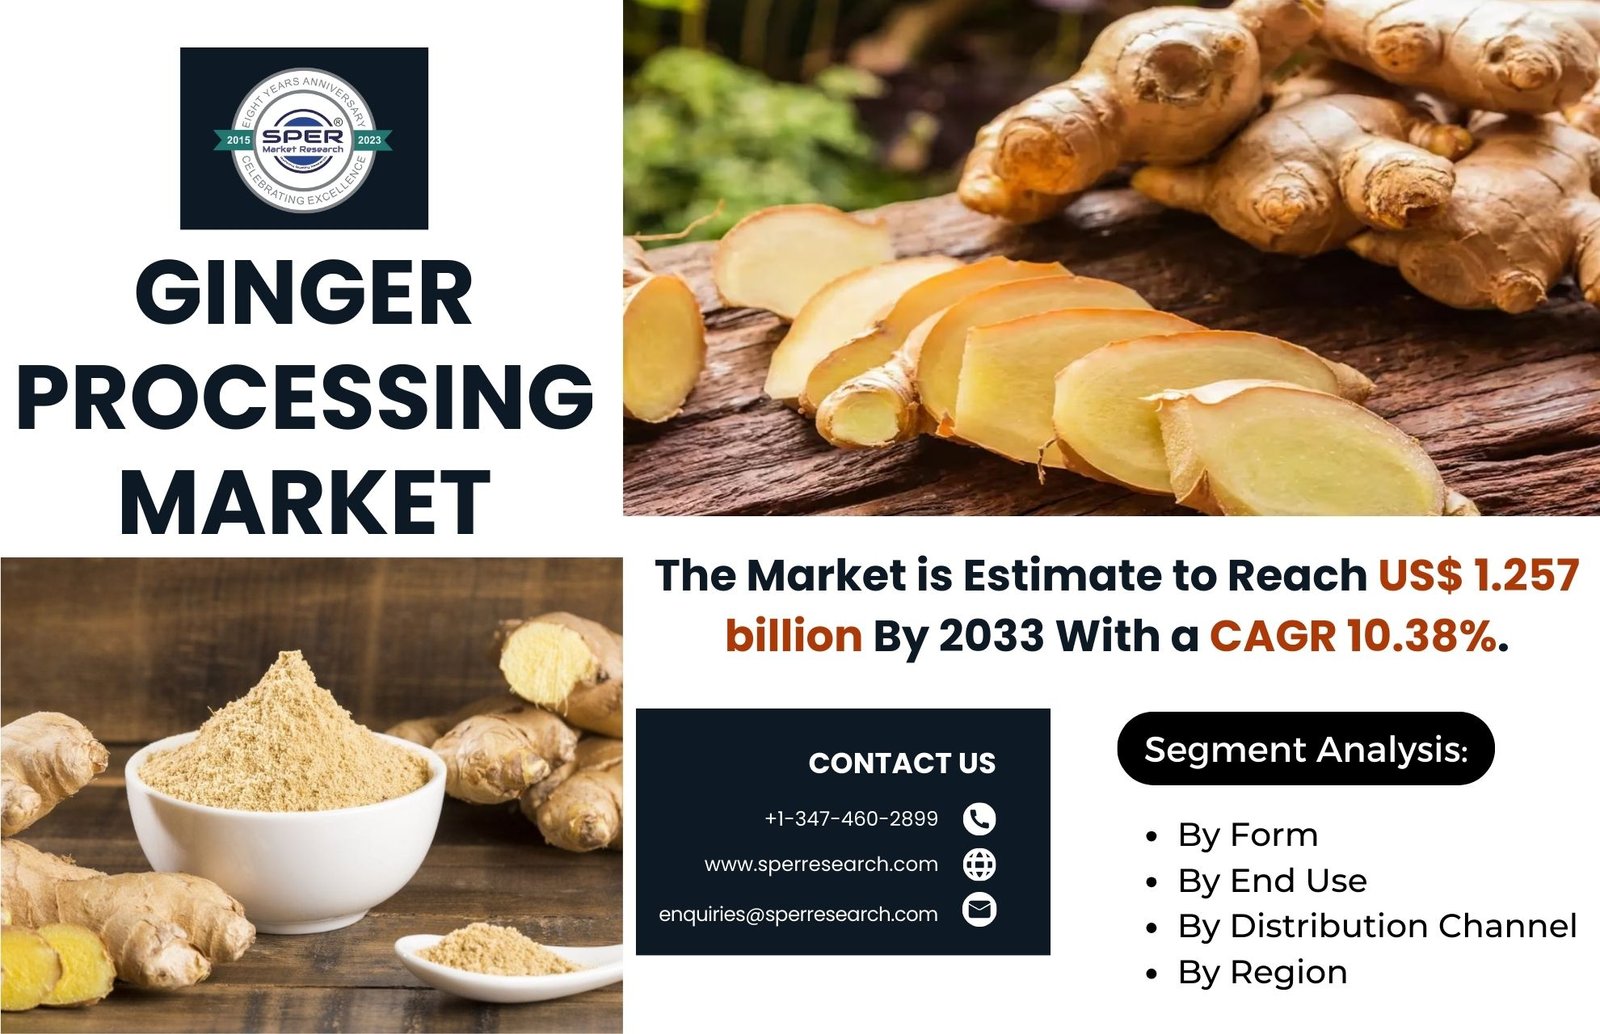 Ginger Processing Market